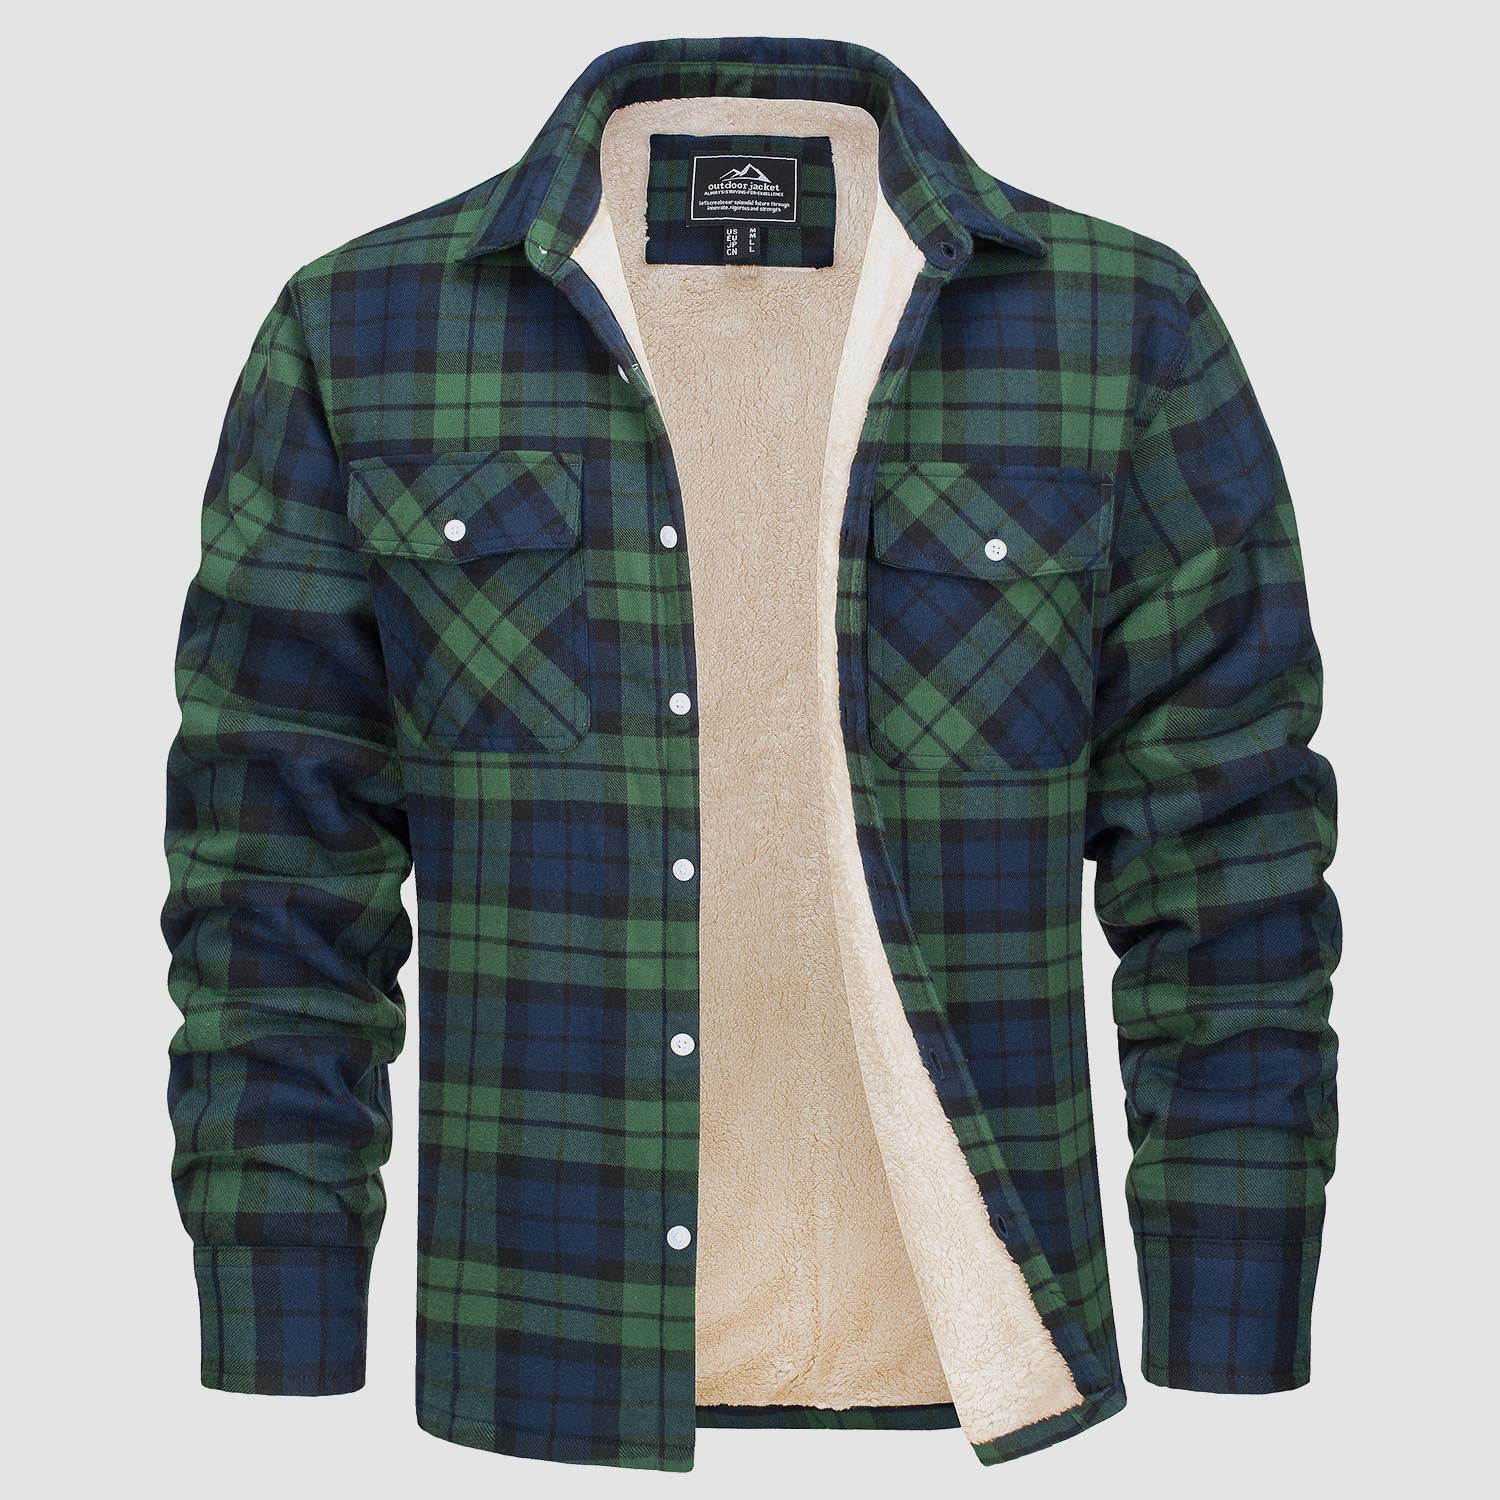 Men's Sherpa Fleece Lined Shirt Casual Plaid Shirt Jacket, Green / S